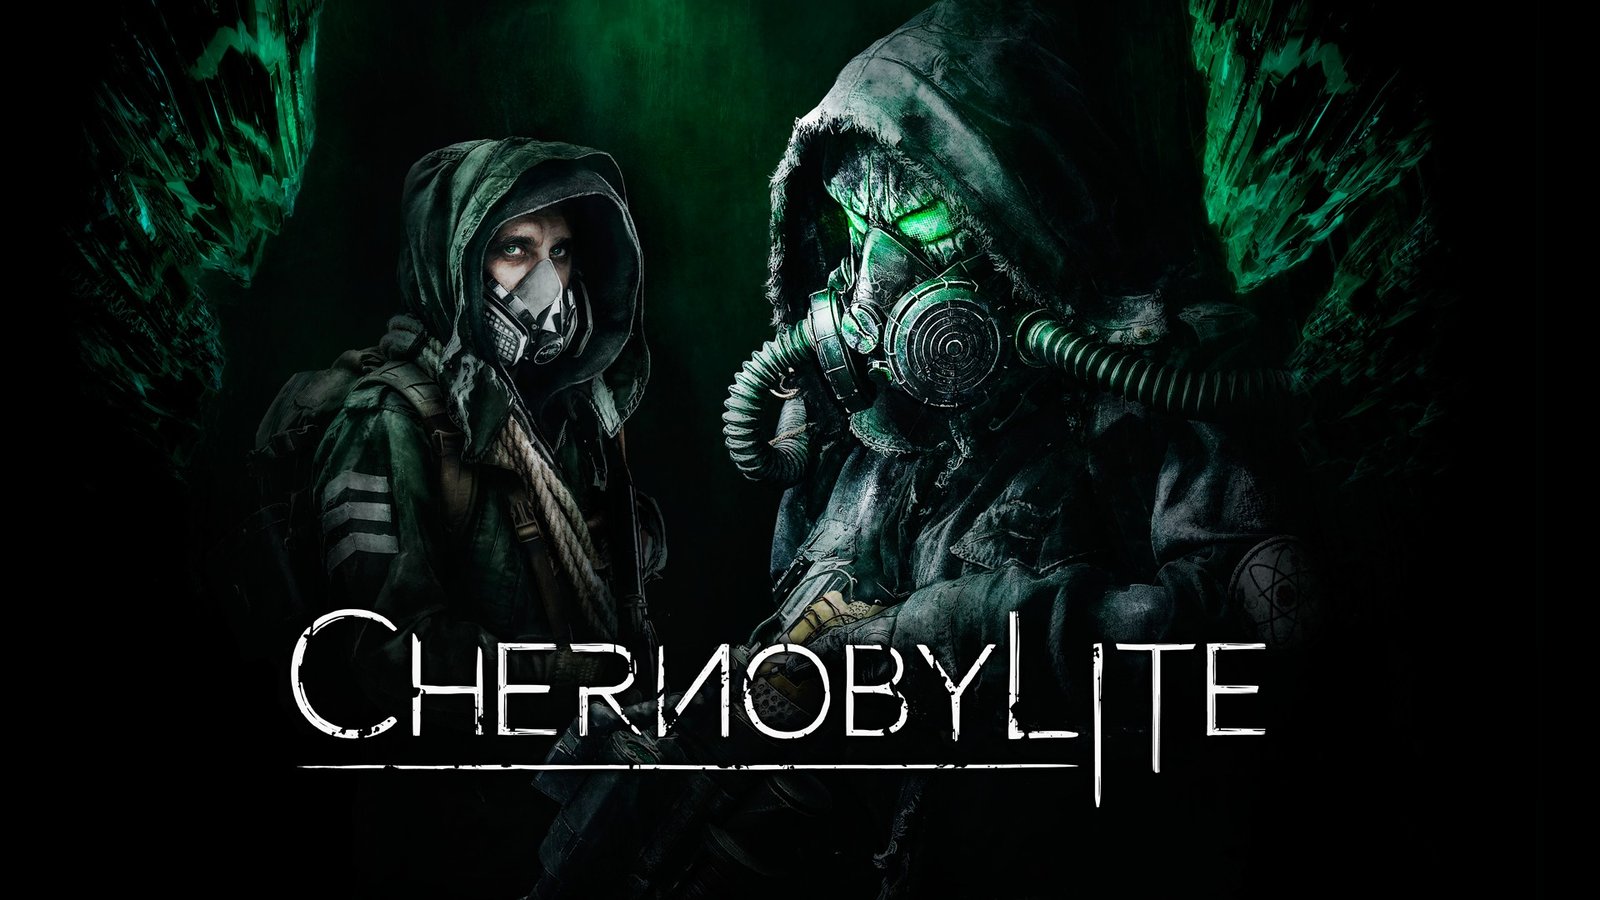 Науково-фантастичний хоррор про Чорнобиль Chernobylite отримав дату виходу на всіх платформах